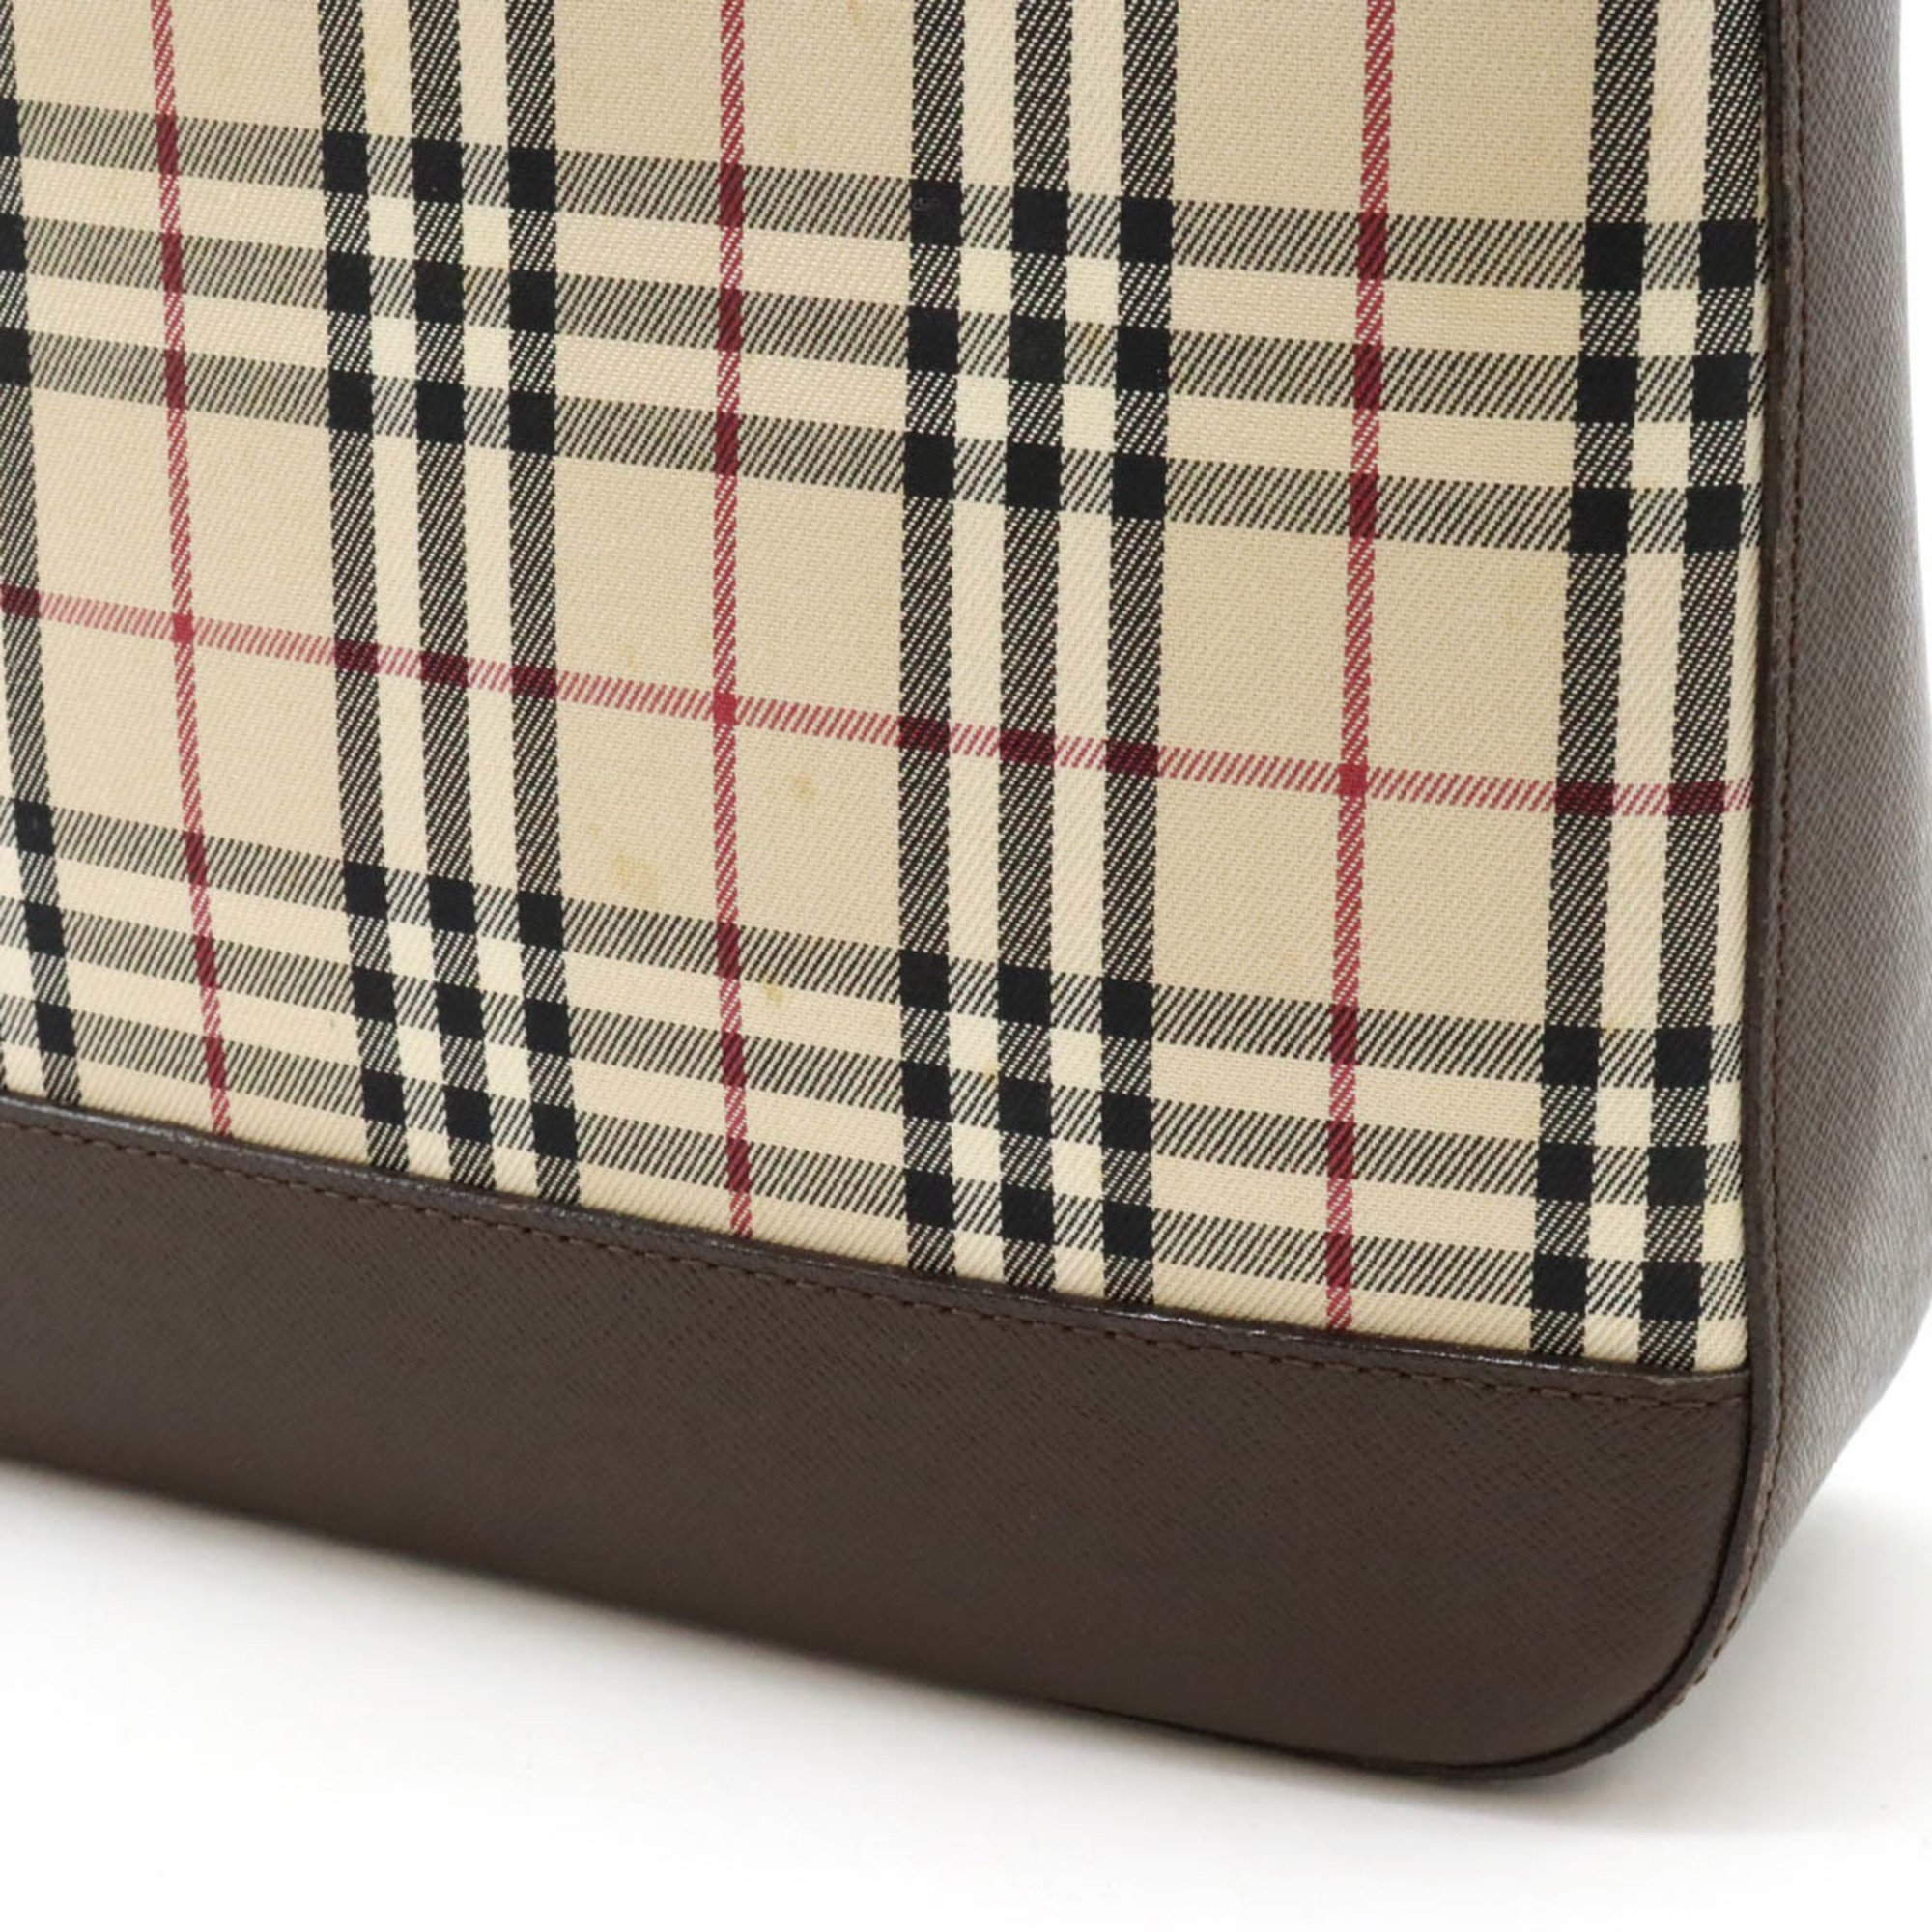 BURBERRY Nova Check Shoulder Bag Canvas Leather Beige Dark Brown